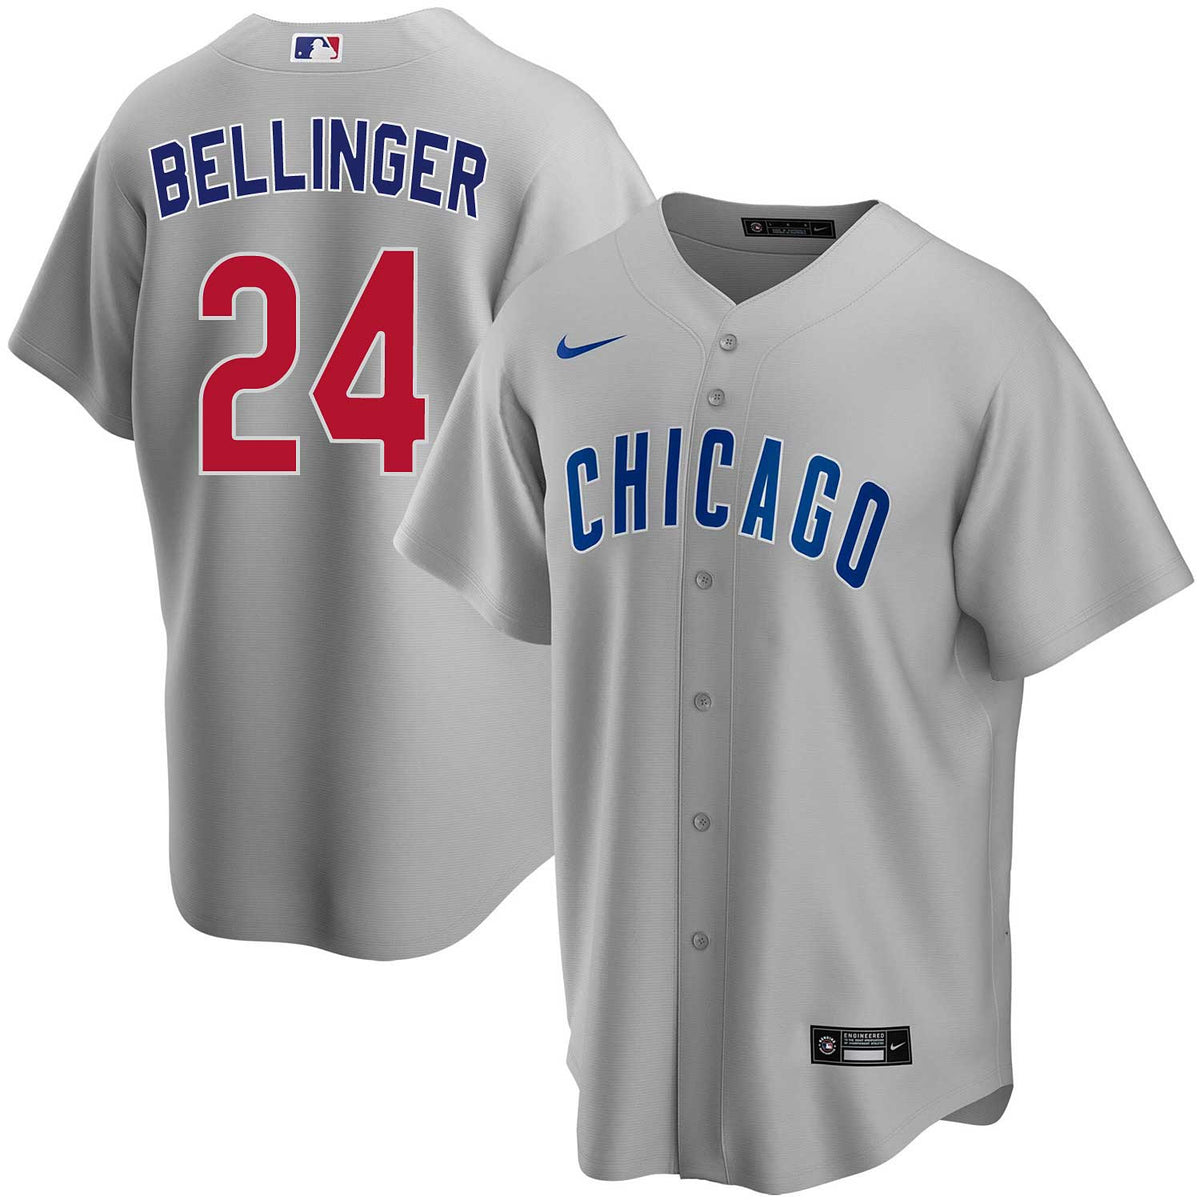 Men's Nike Cody Bellinger Royal Chicago Cubs Name & Number T-Shirt